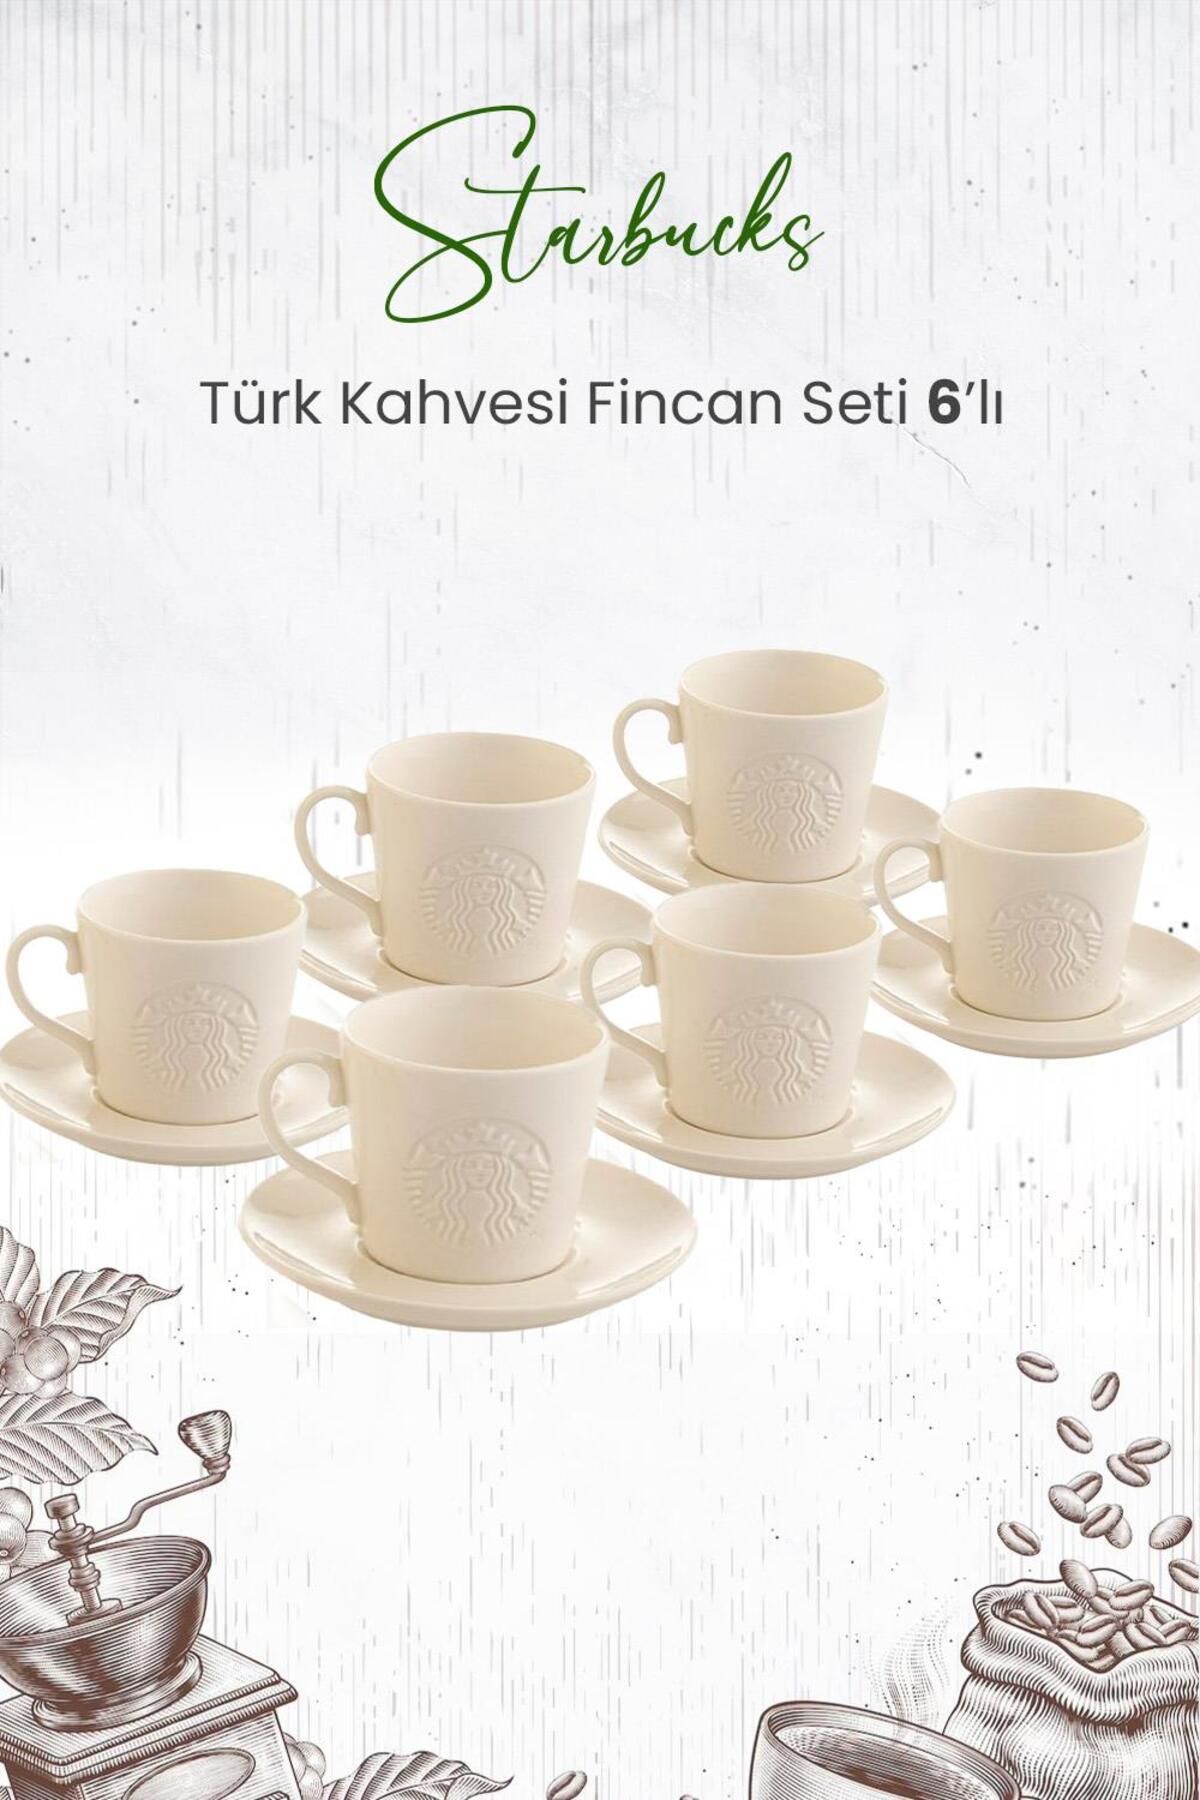 Starbucks Türk Kahvesi Fincan Seti 6'lı